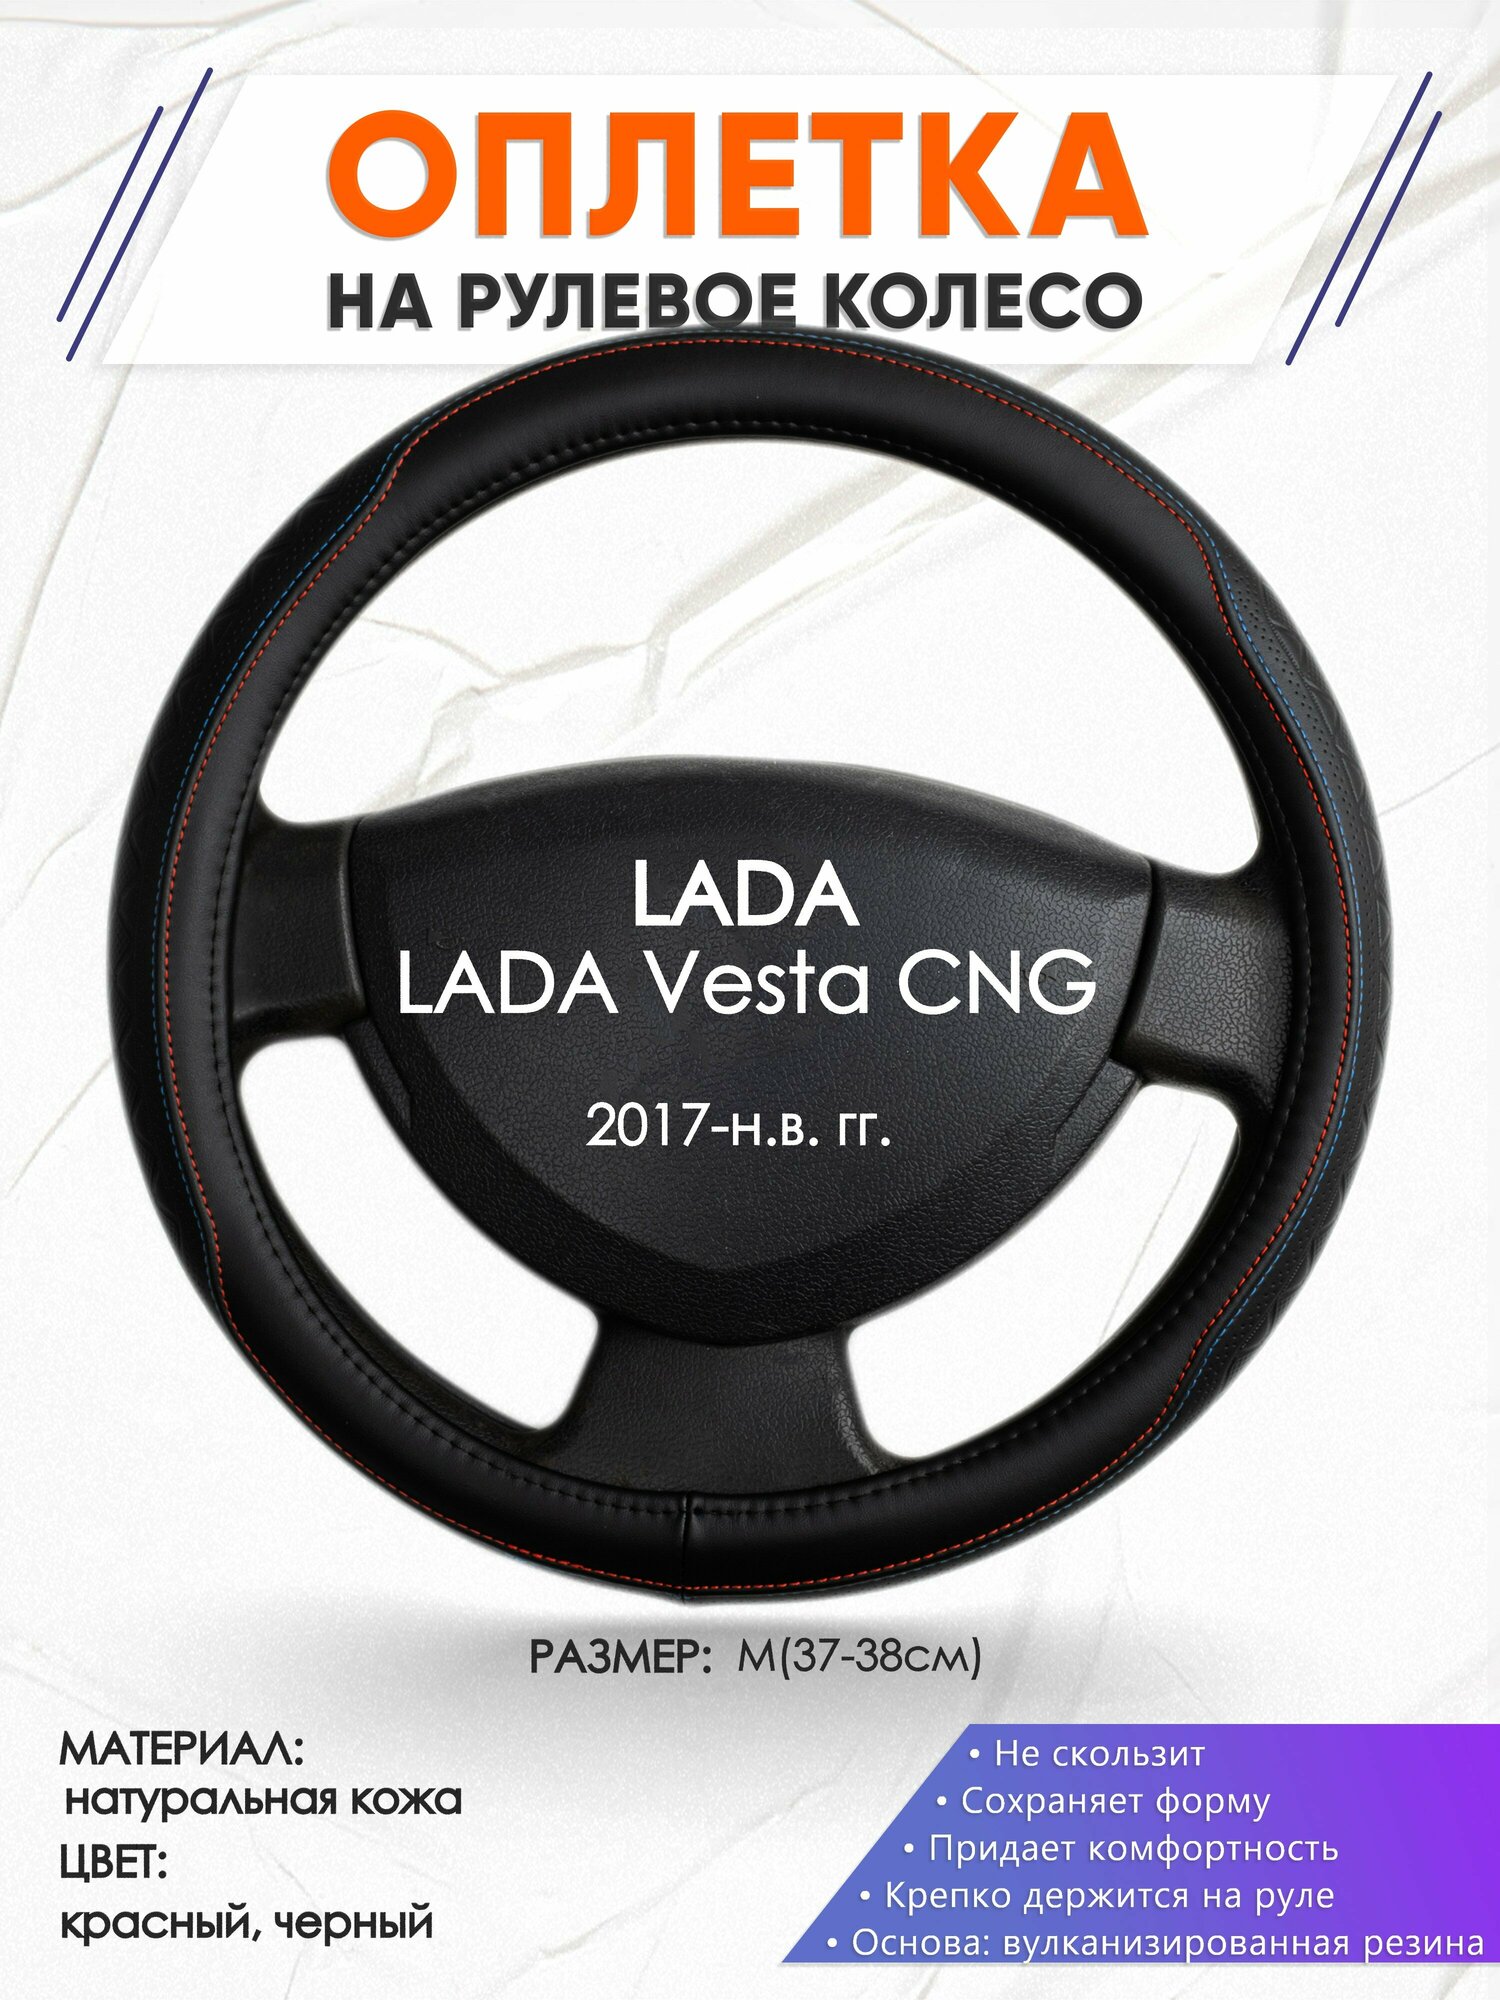 Оплетка наруль для LADA Vesta CNG(Лада Веста) 2017-н. в. годов выпуска, размер M(37-38см), Натуральная кожа 89